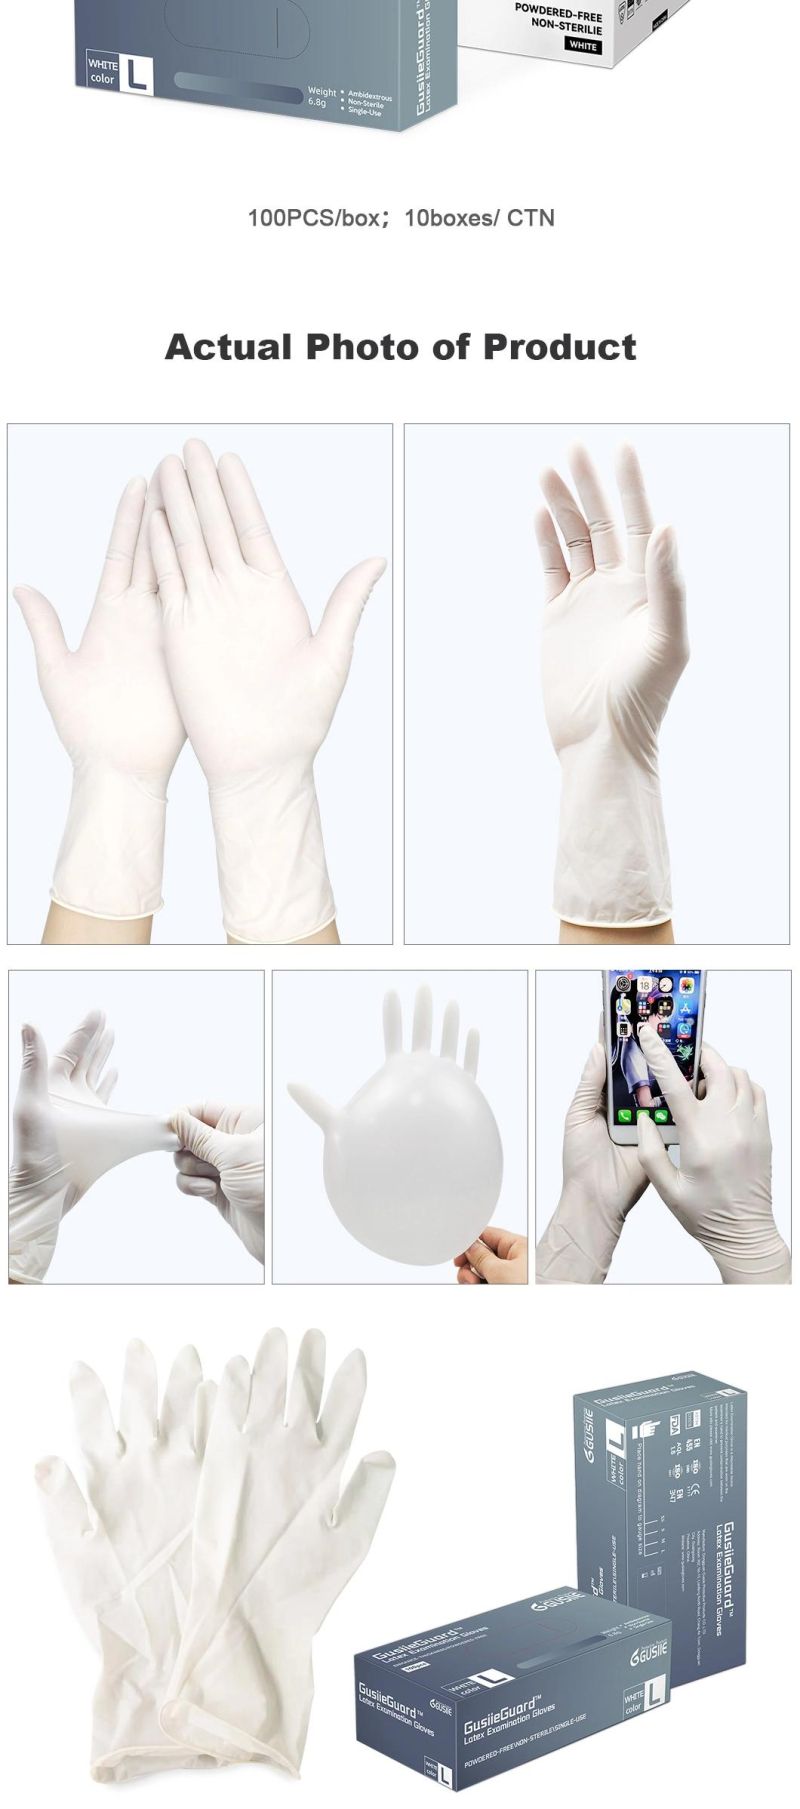 Natural Latex Disposable Medical Examination Latex Gloves